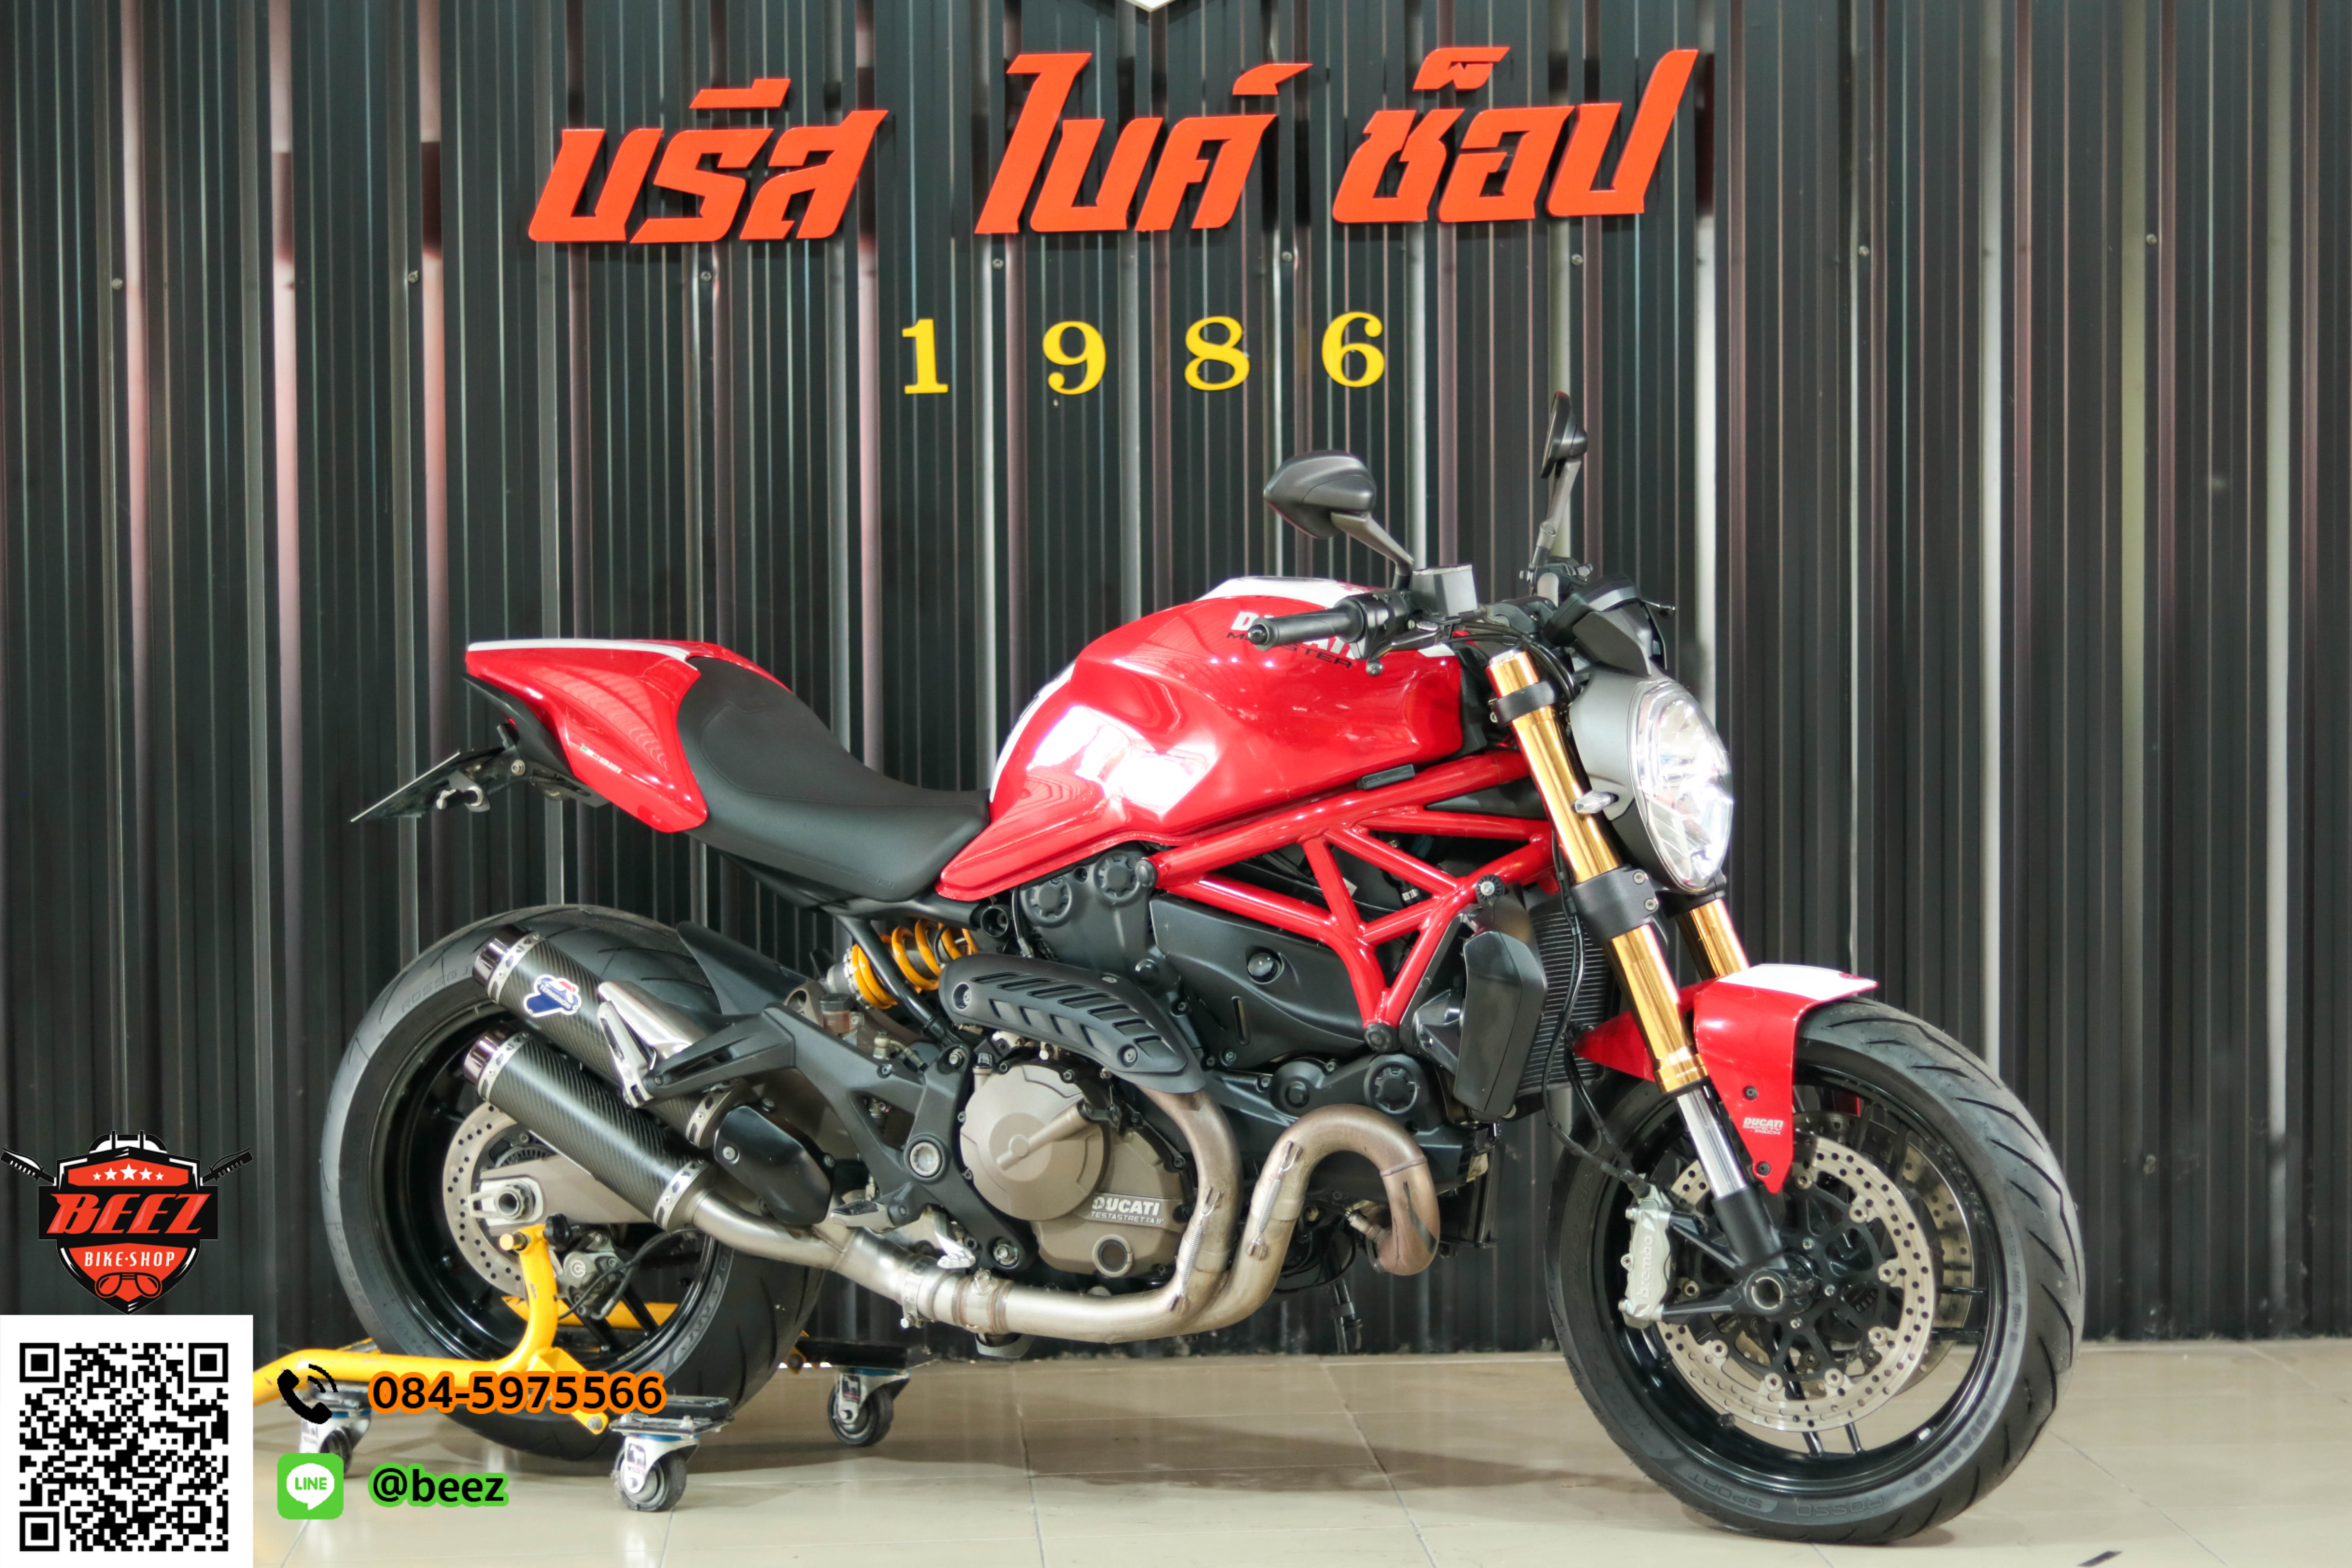 ขาย Ducati monster 821 ABS ปี 2015 สภาพสวยจัดจ้าน ท่อแต่งเทอมิ